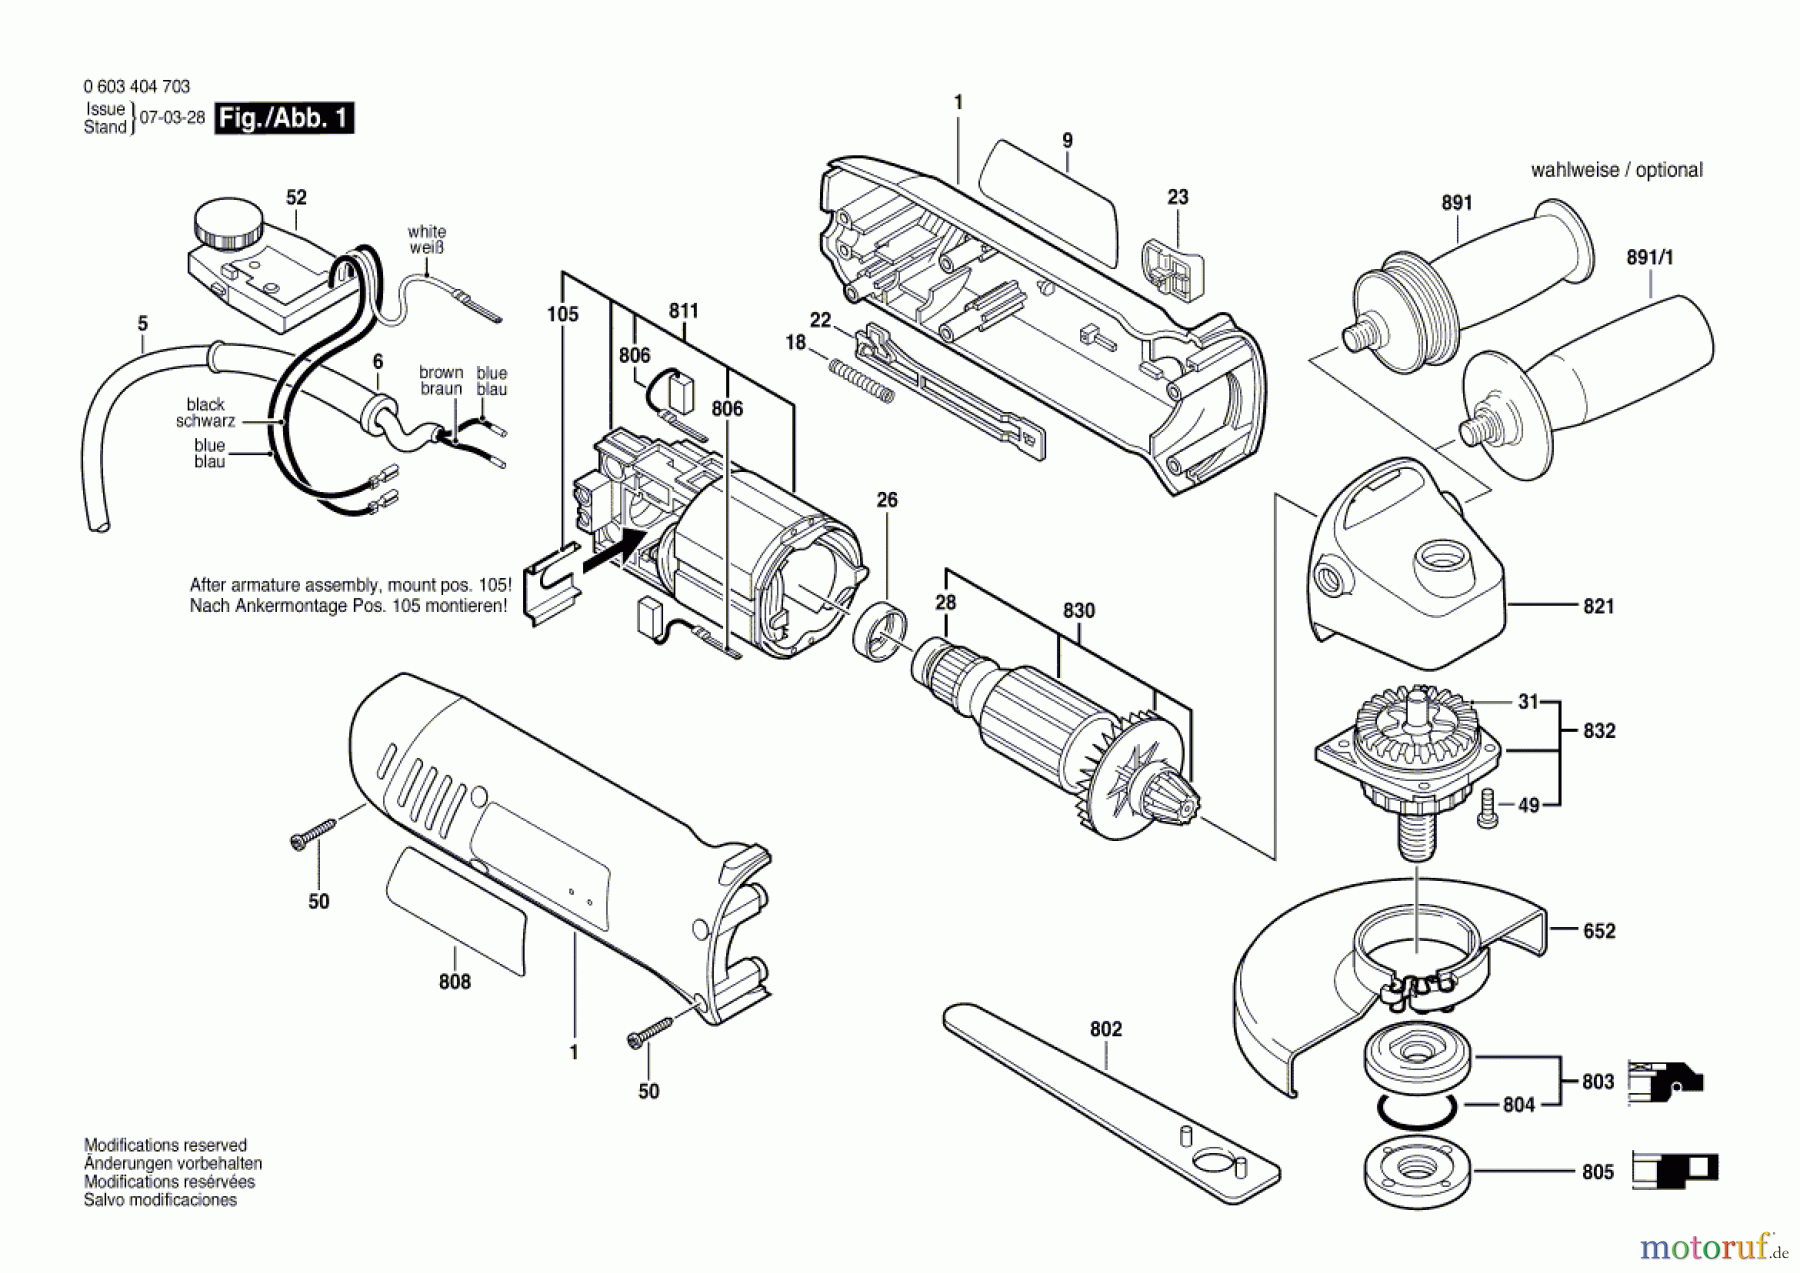  Bosch Werkzeug Winkelschleifer PWS 850 CE Seite 1